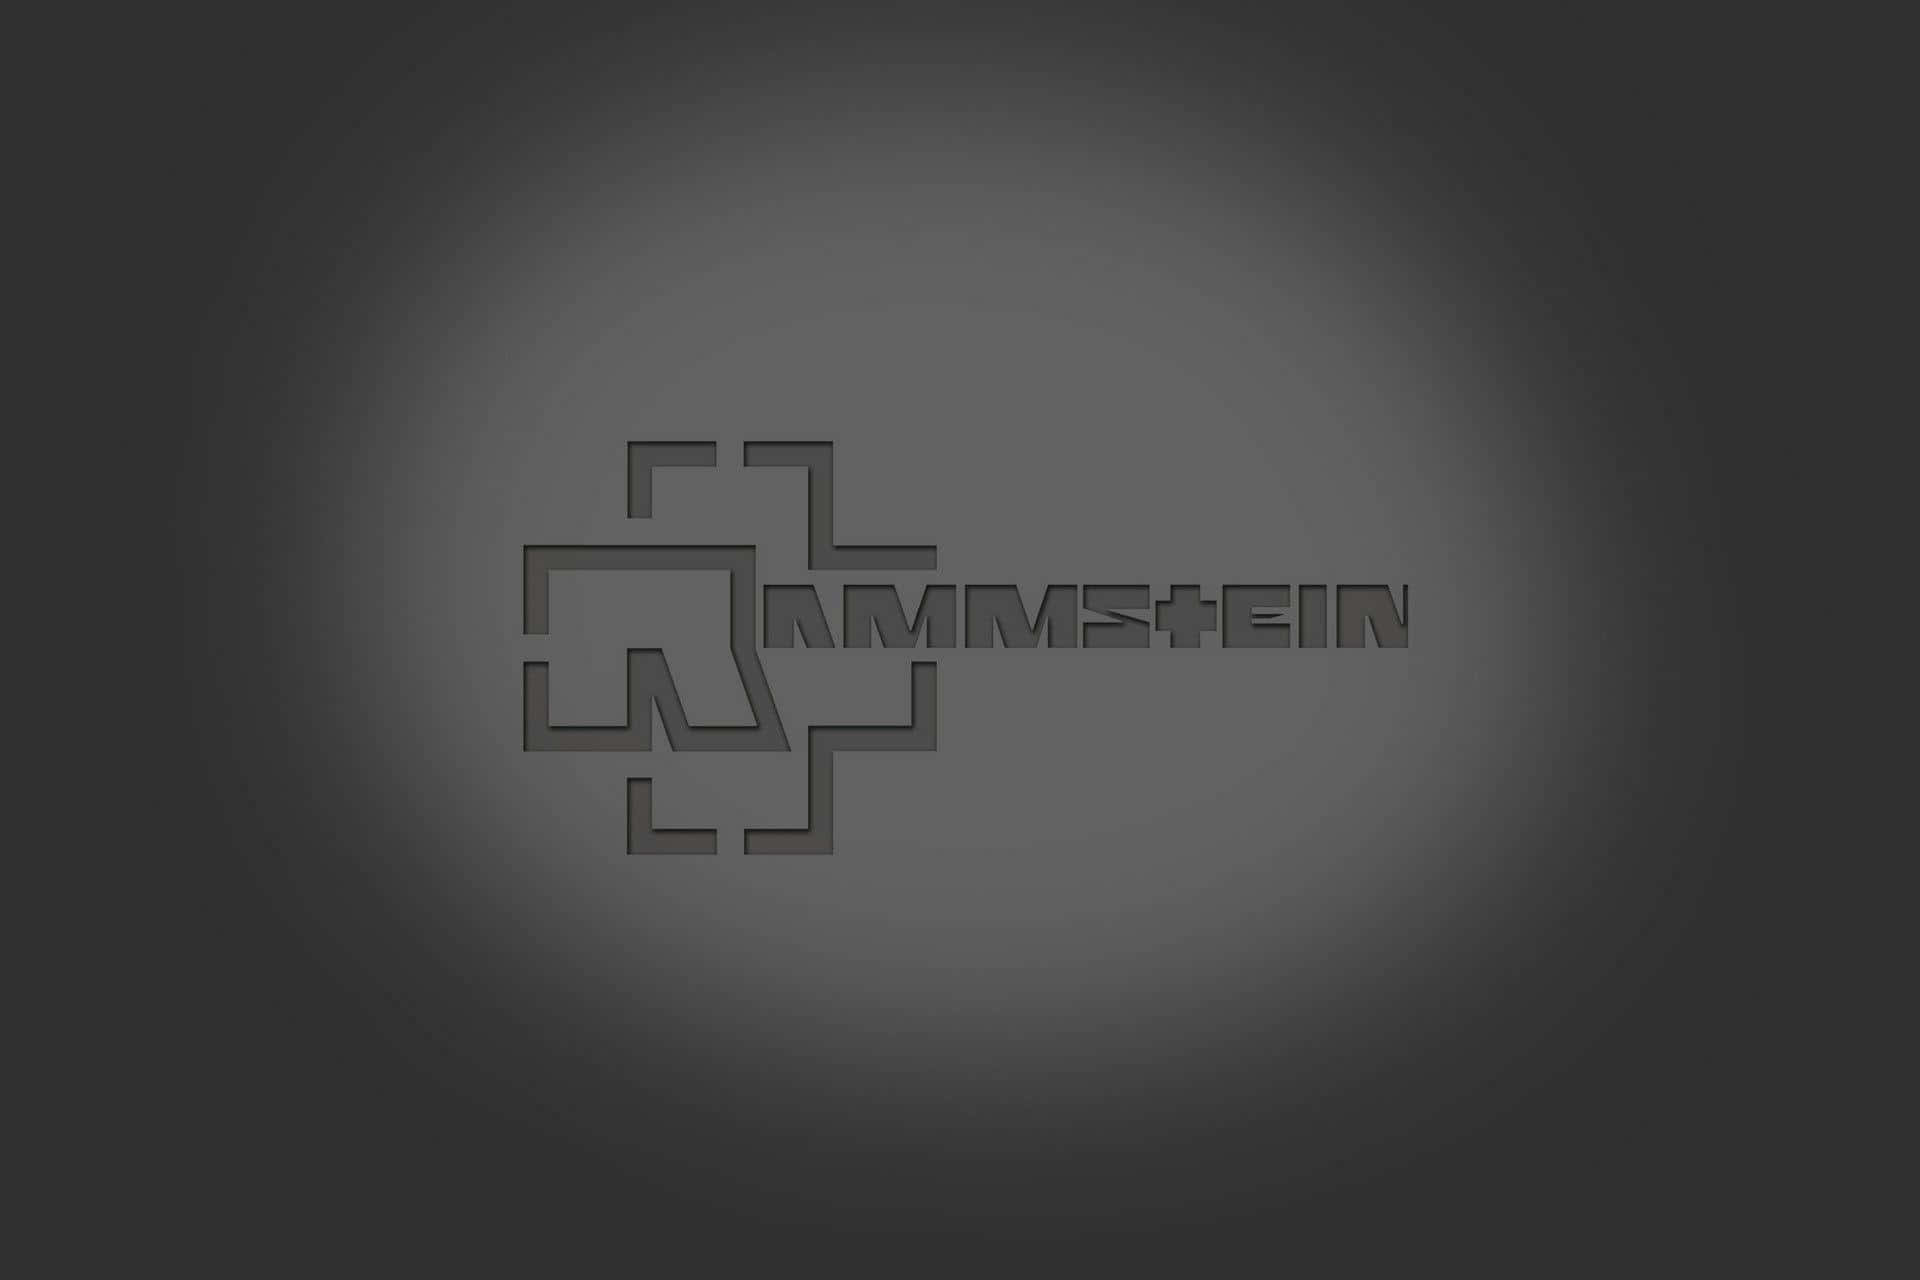 Rammstein Logo Wallpaper Background